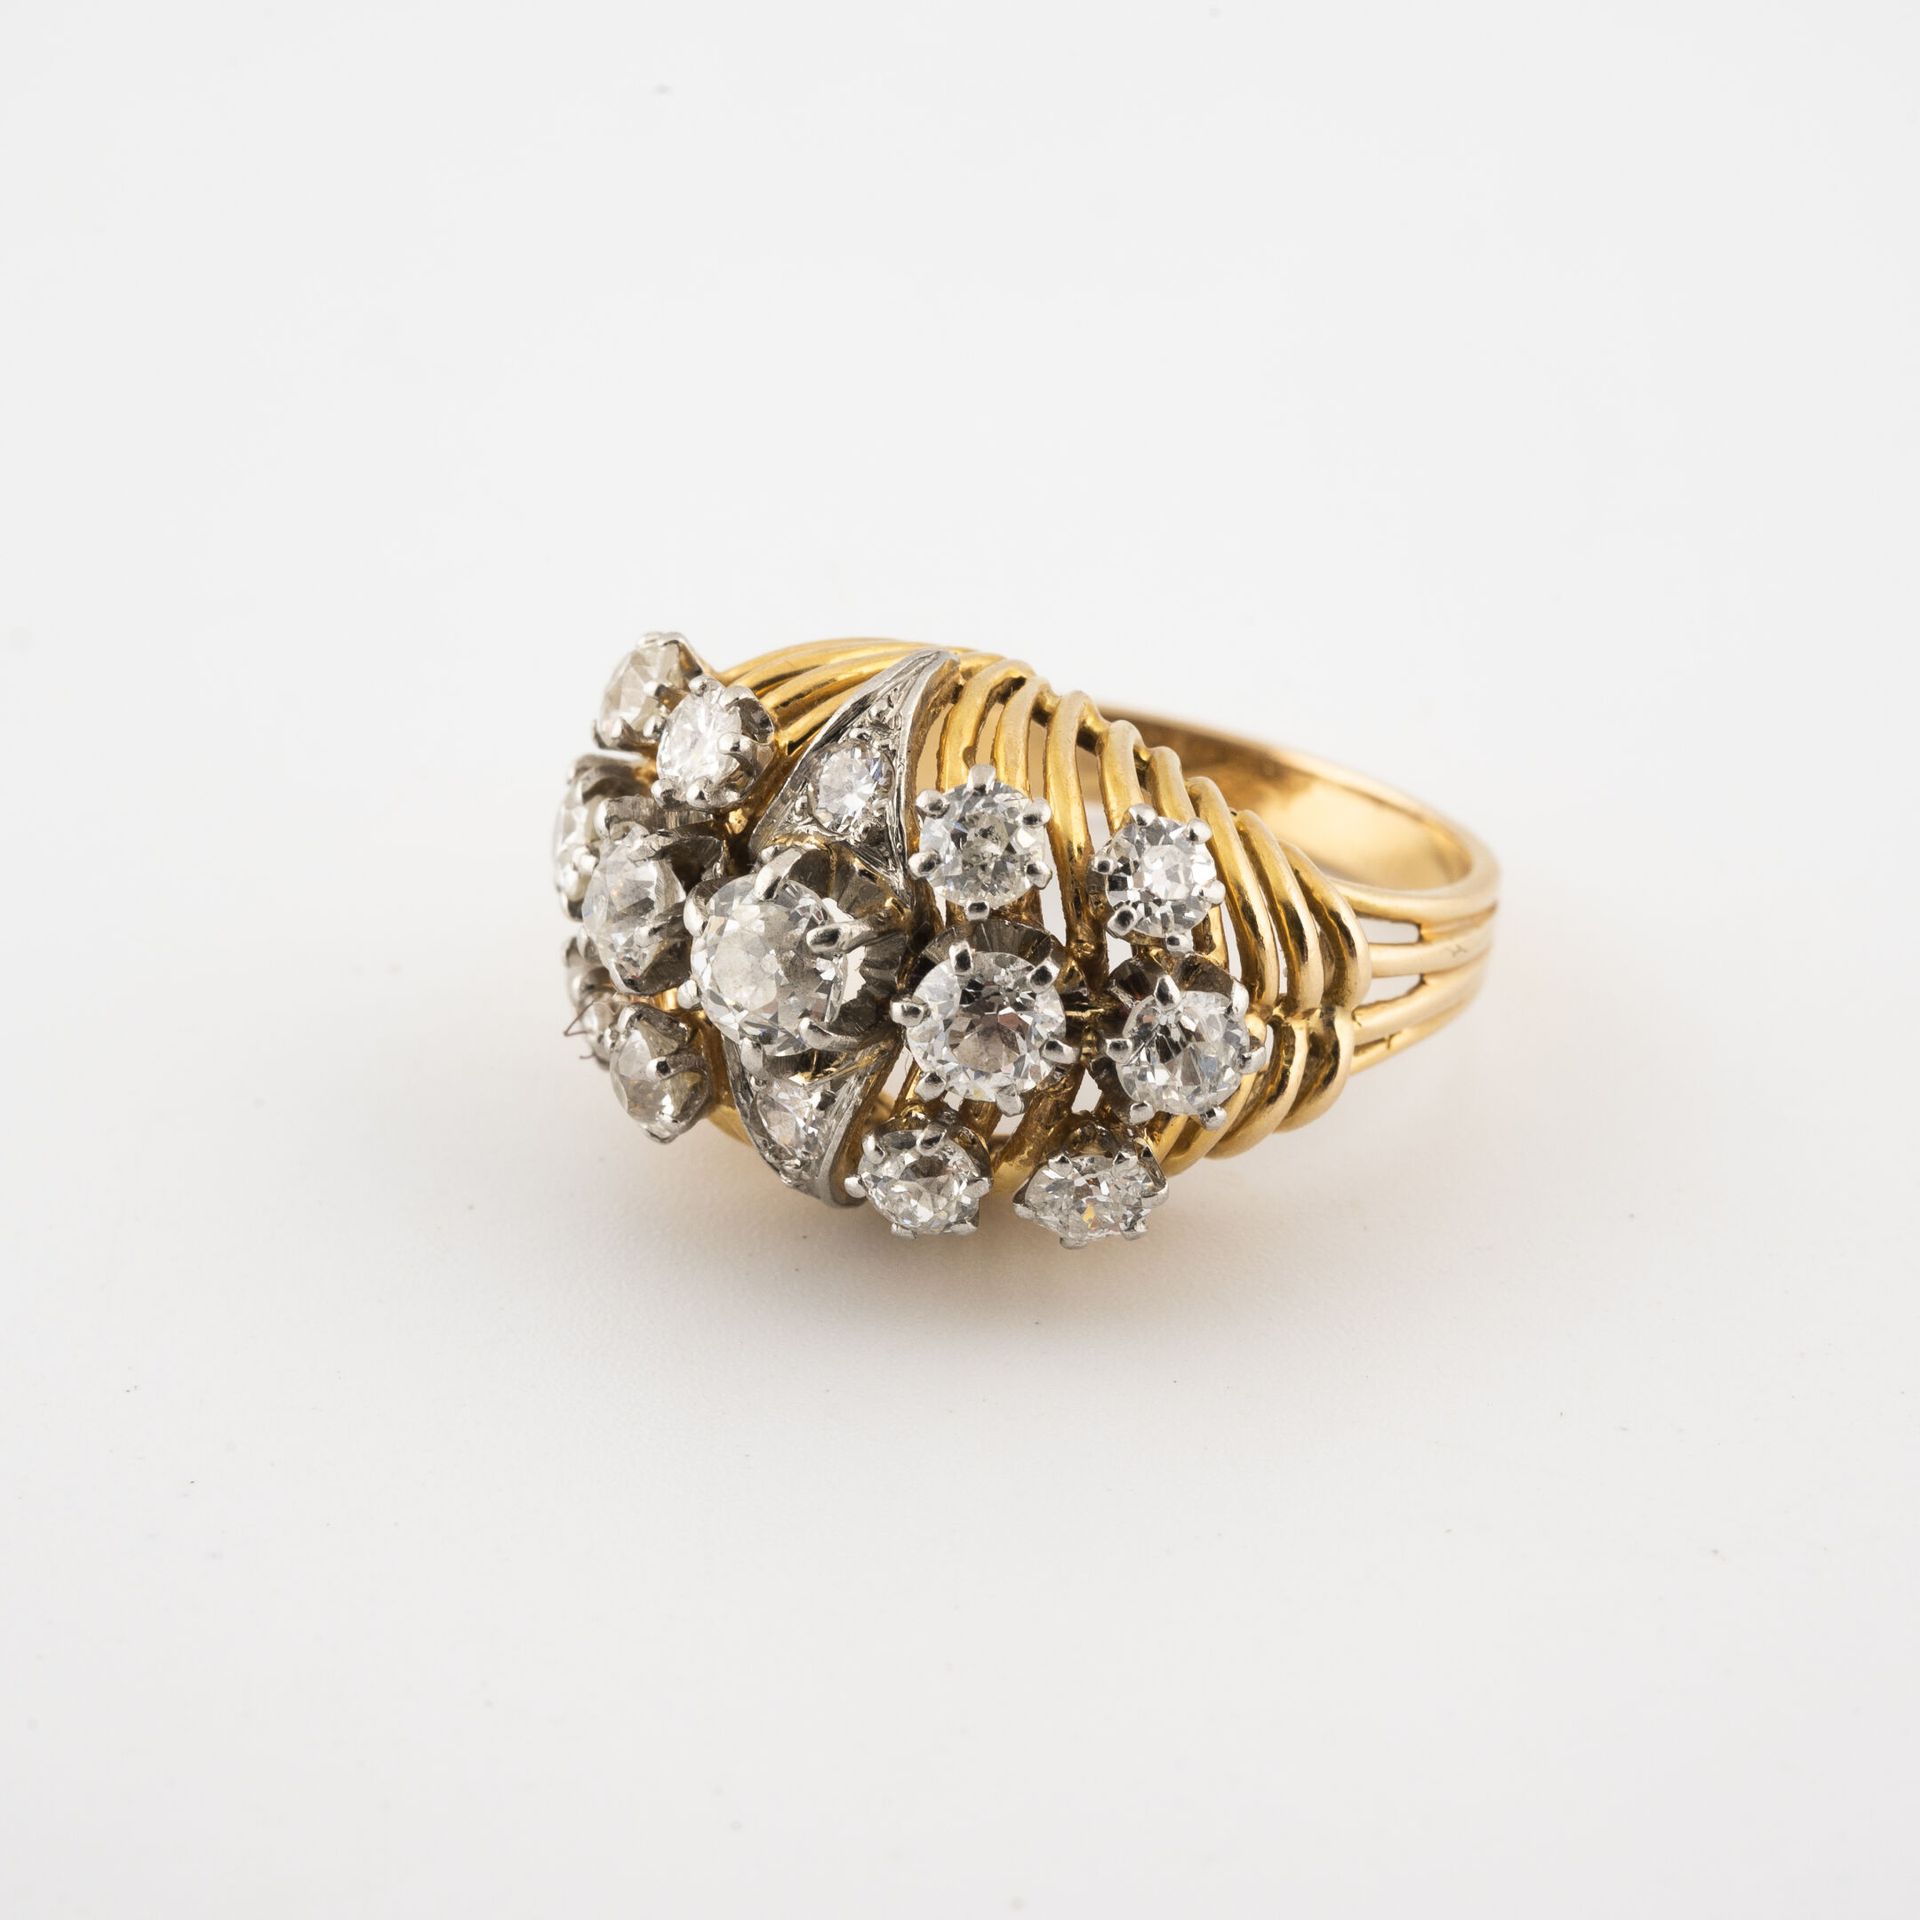 Null 黄金（750）花丝戒指，在铂金（850）上用种子和爪子镶嵌老式和明亮式切割钻石。

毛重：7.7克。- 手指大小：52.5。

刮痕、破损，包括中央的&hellip;